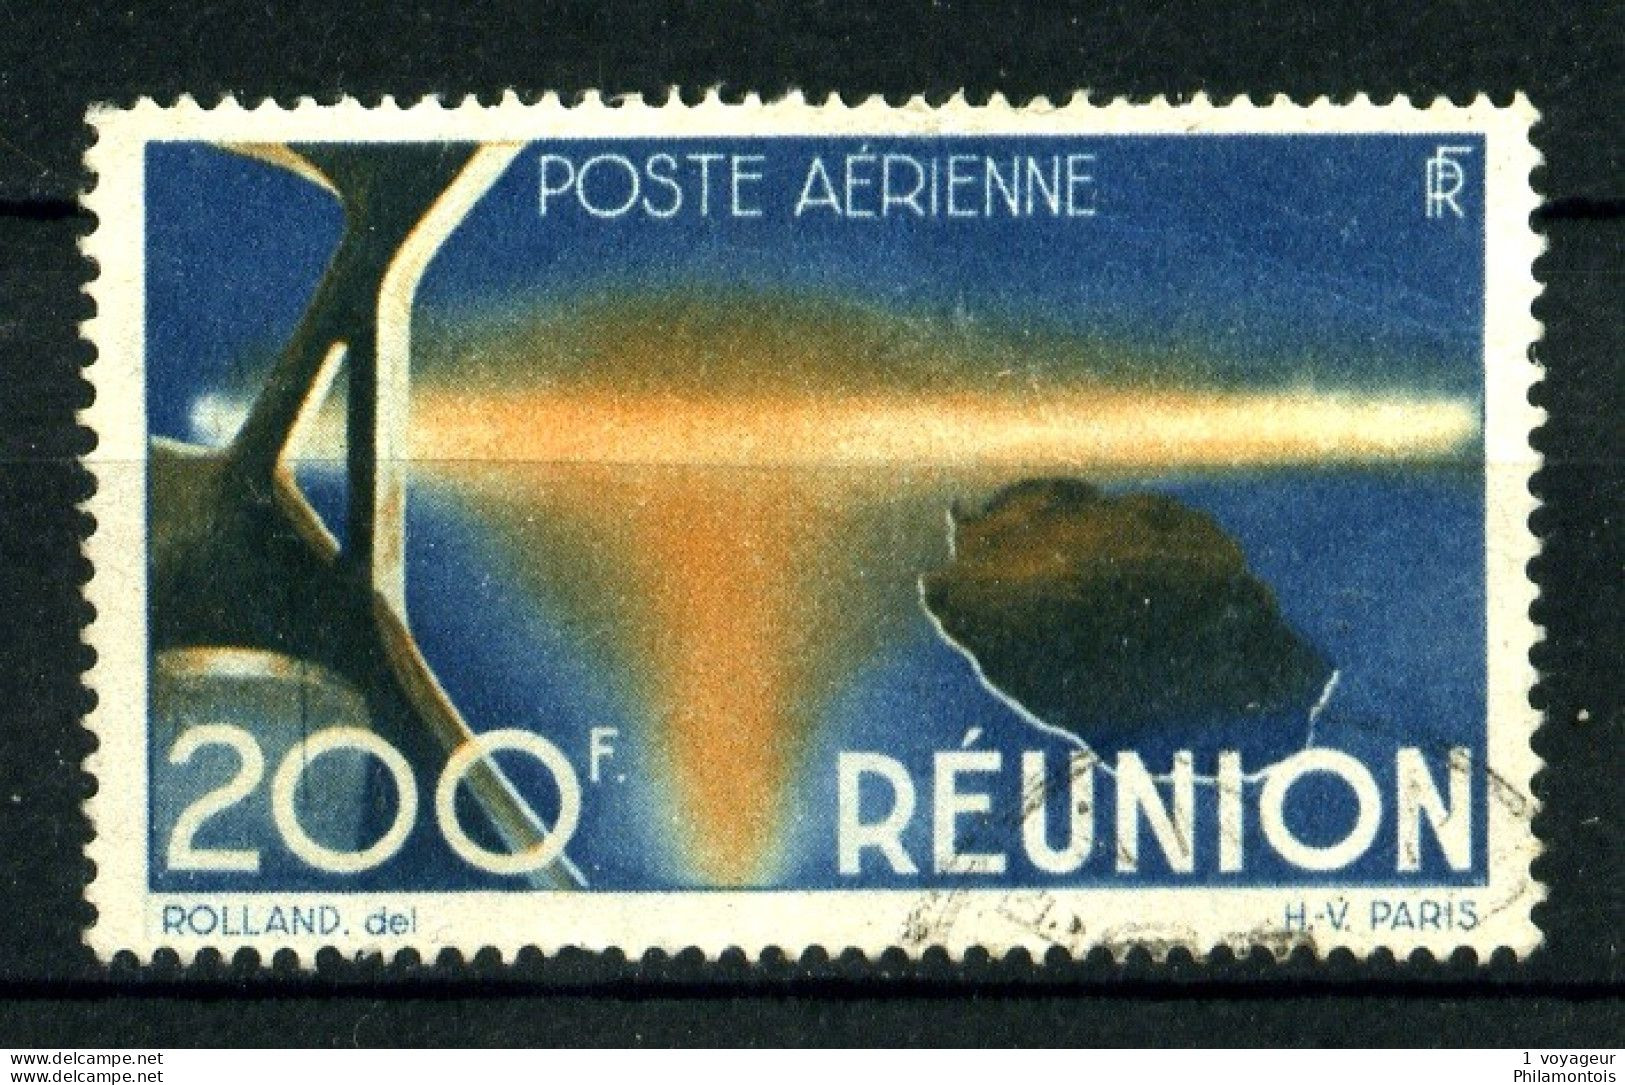 REUNION - PA 44 - 200F Bleu Et Orange - Oblitéré  - Très Beau - Luchtpost